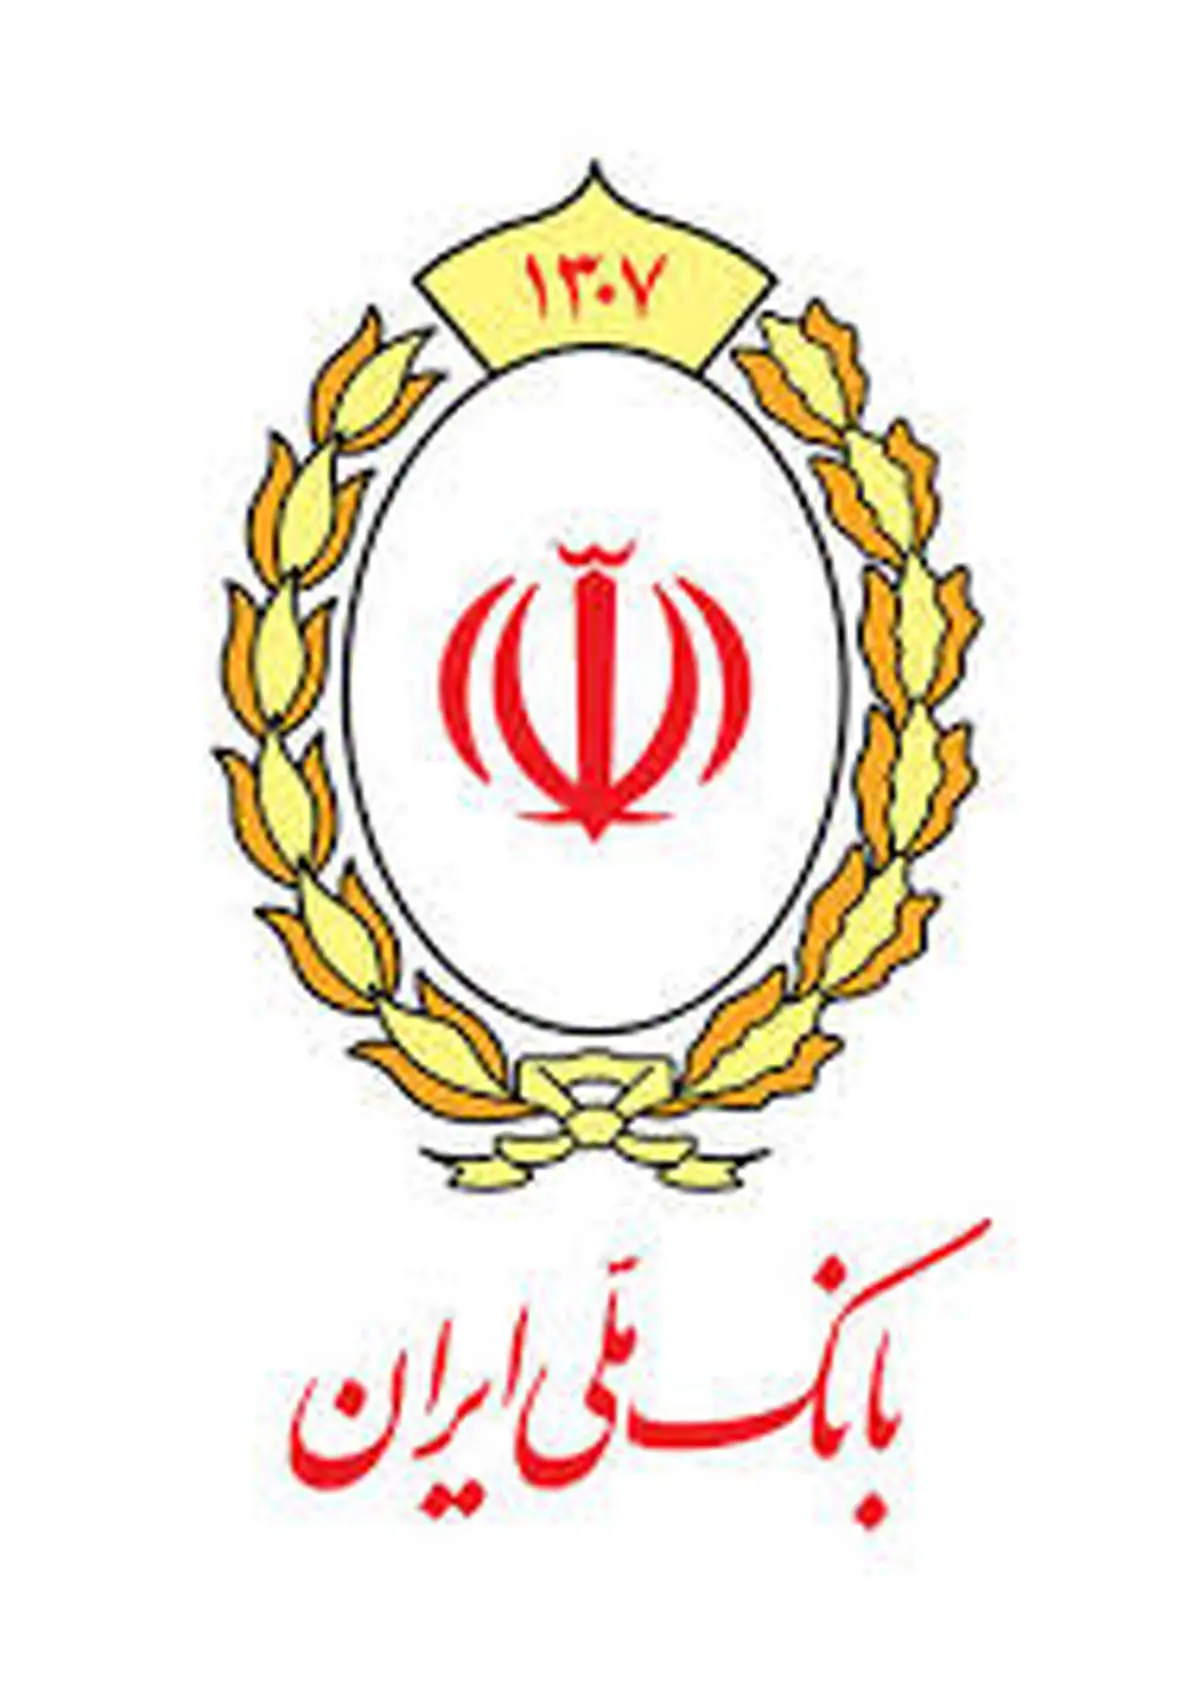 سهم 25 درصدی بانک ملی ایران از کل تسهیلات واریزی به حساب سرپرستان خانوار یارانه بگیر

